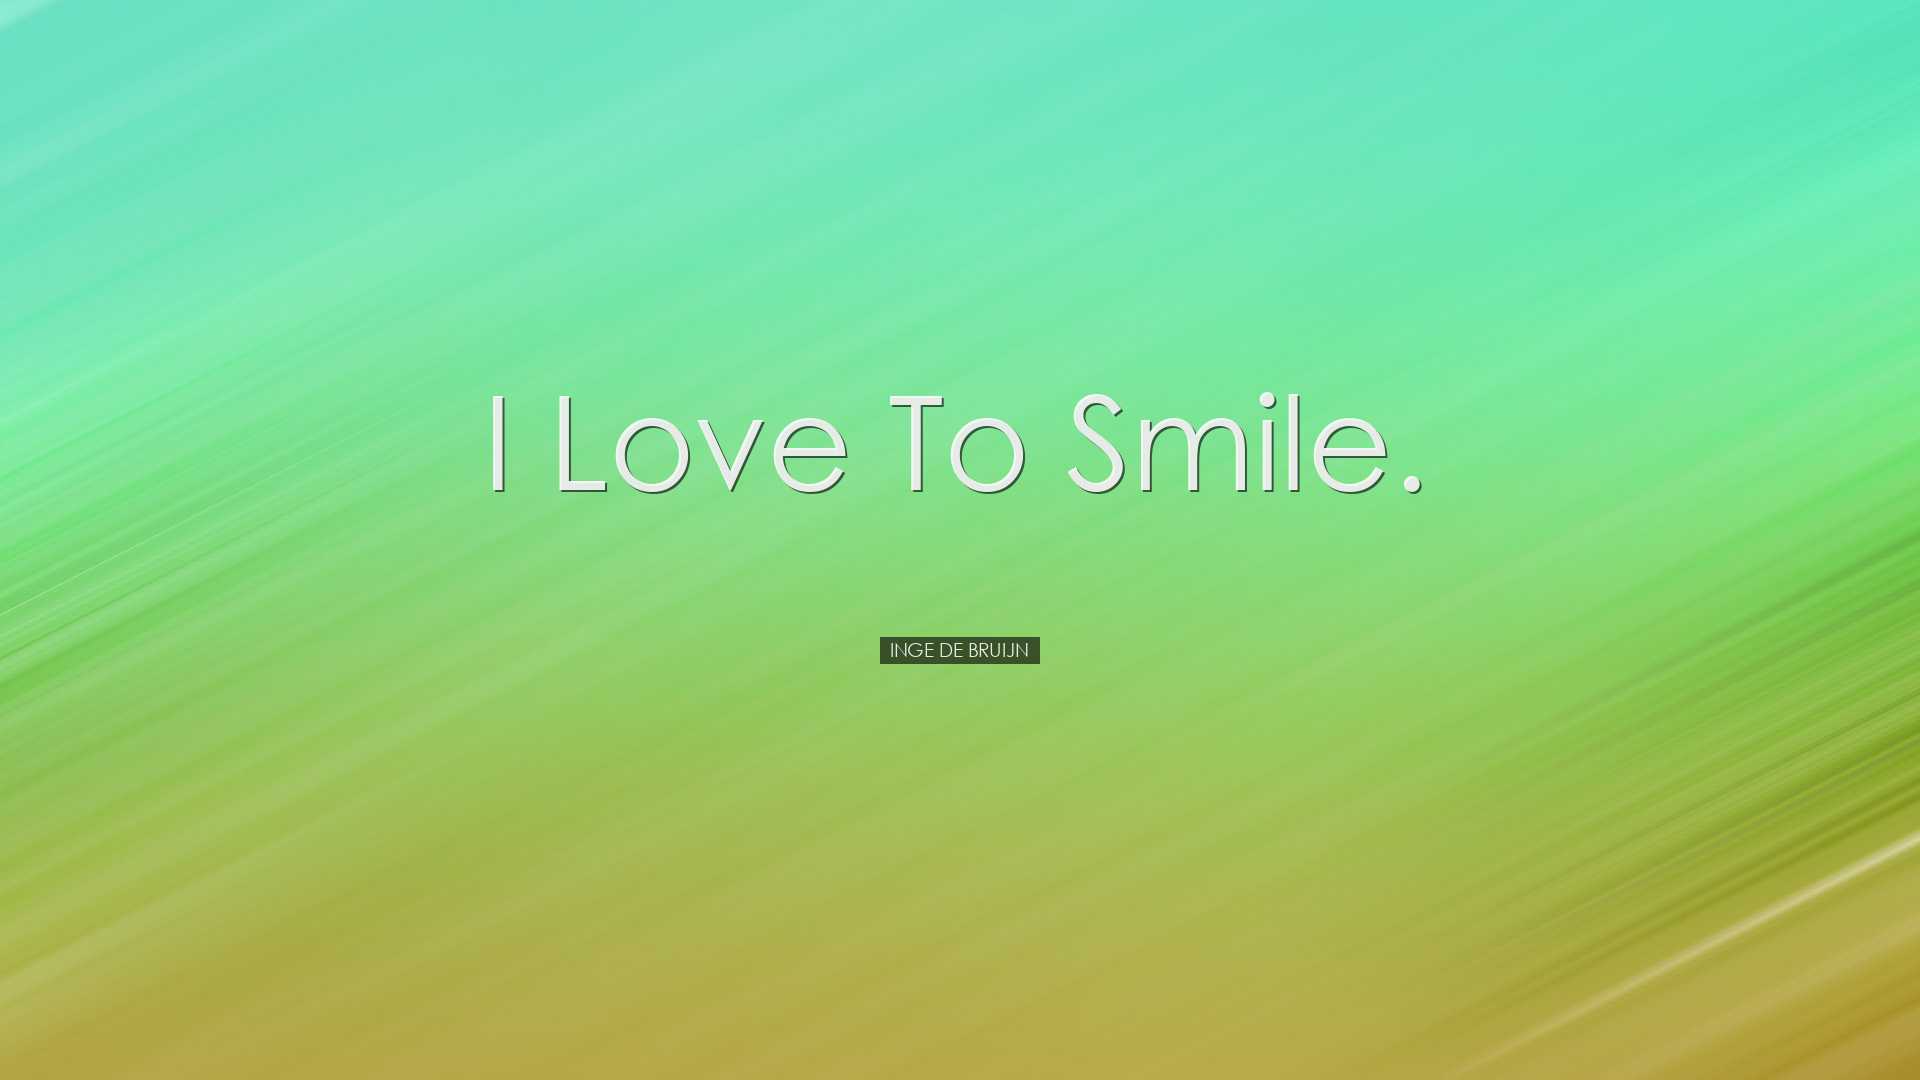 I love to smile. - Inge de Bruijn